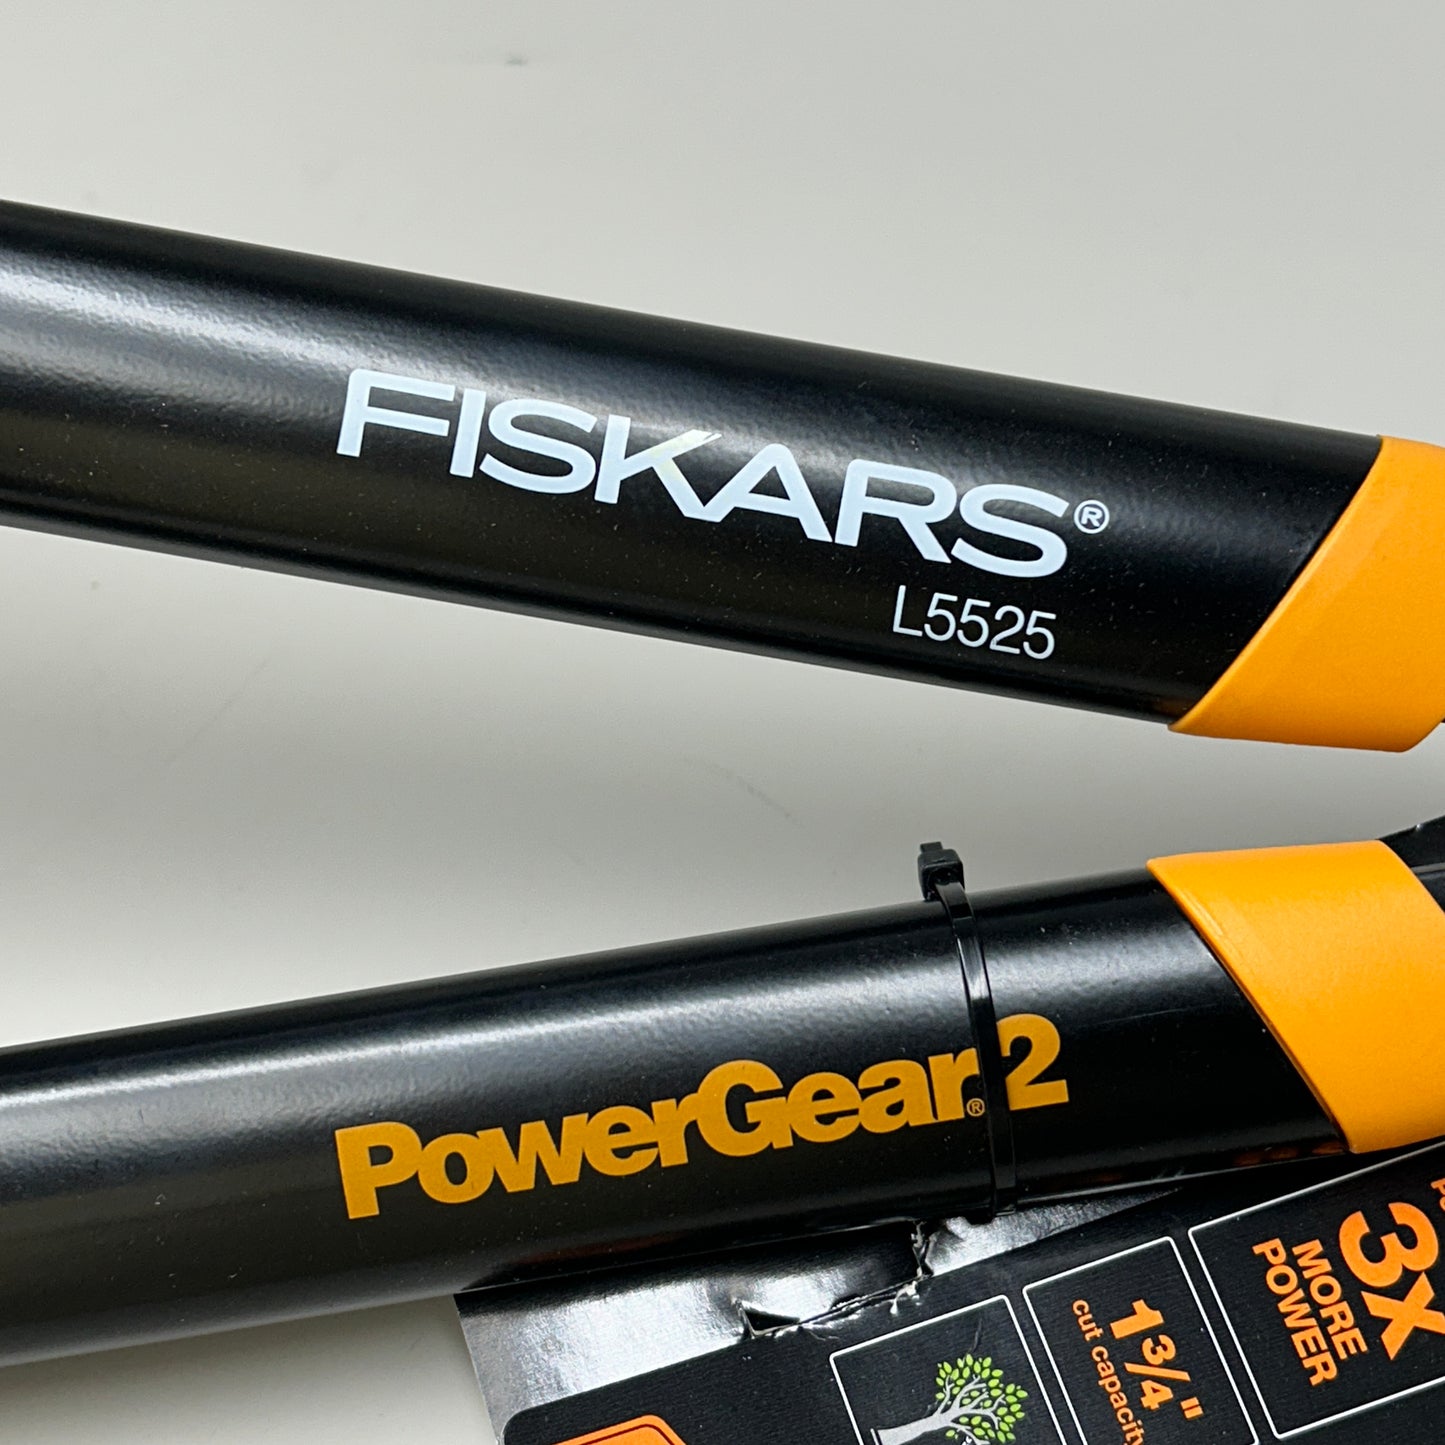 FISKARS PowerGear2 Steel Blade Garden Lopper 32" (New)